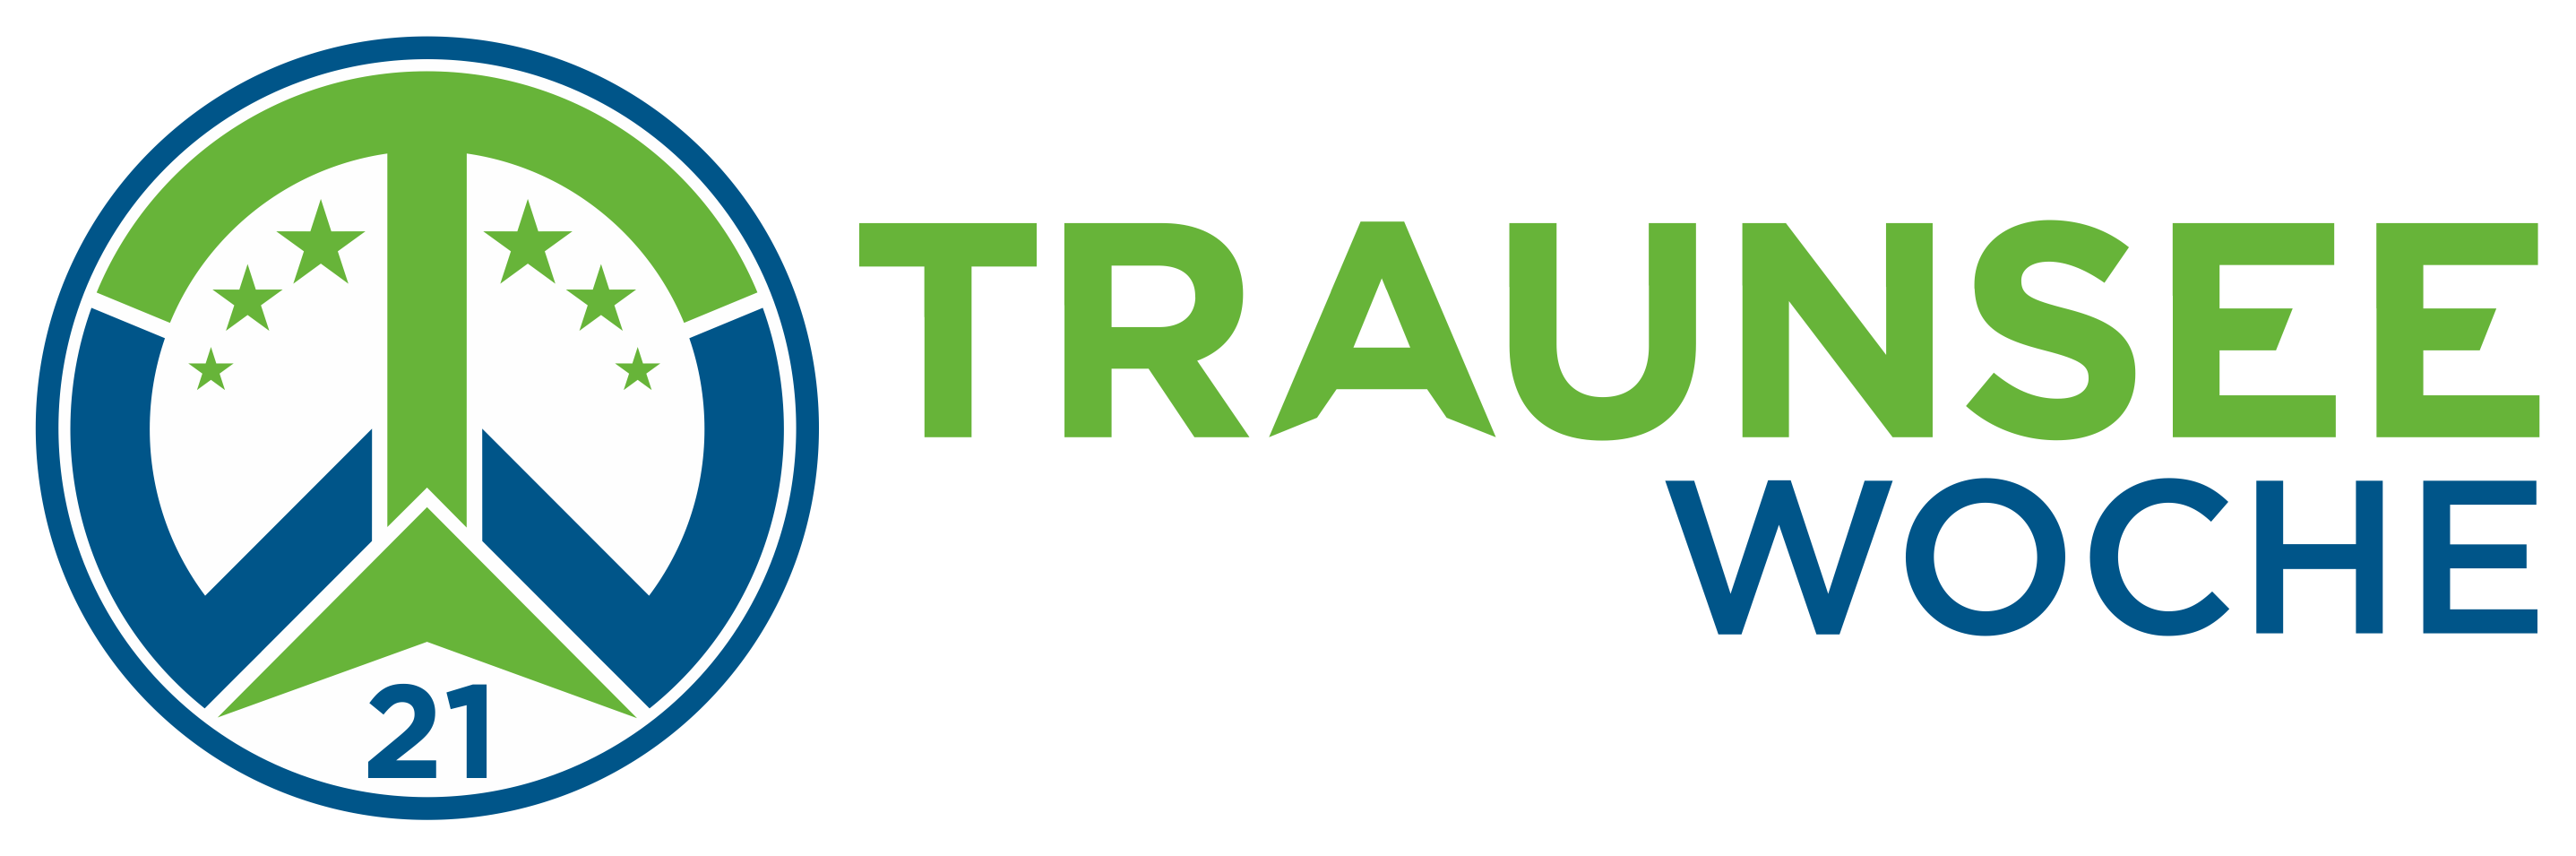 Traunseewoche Logo